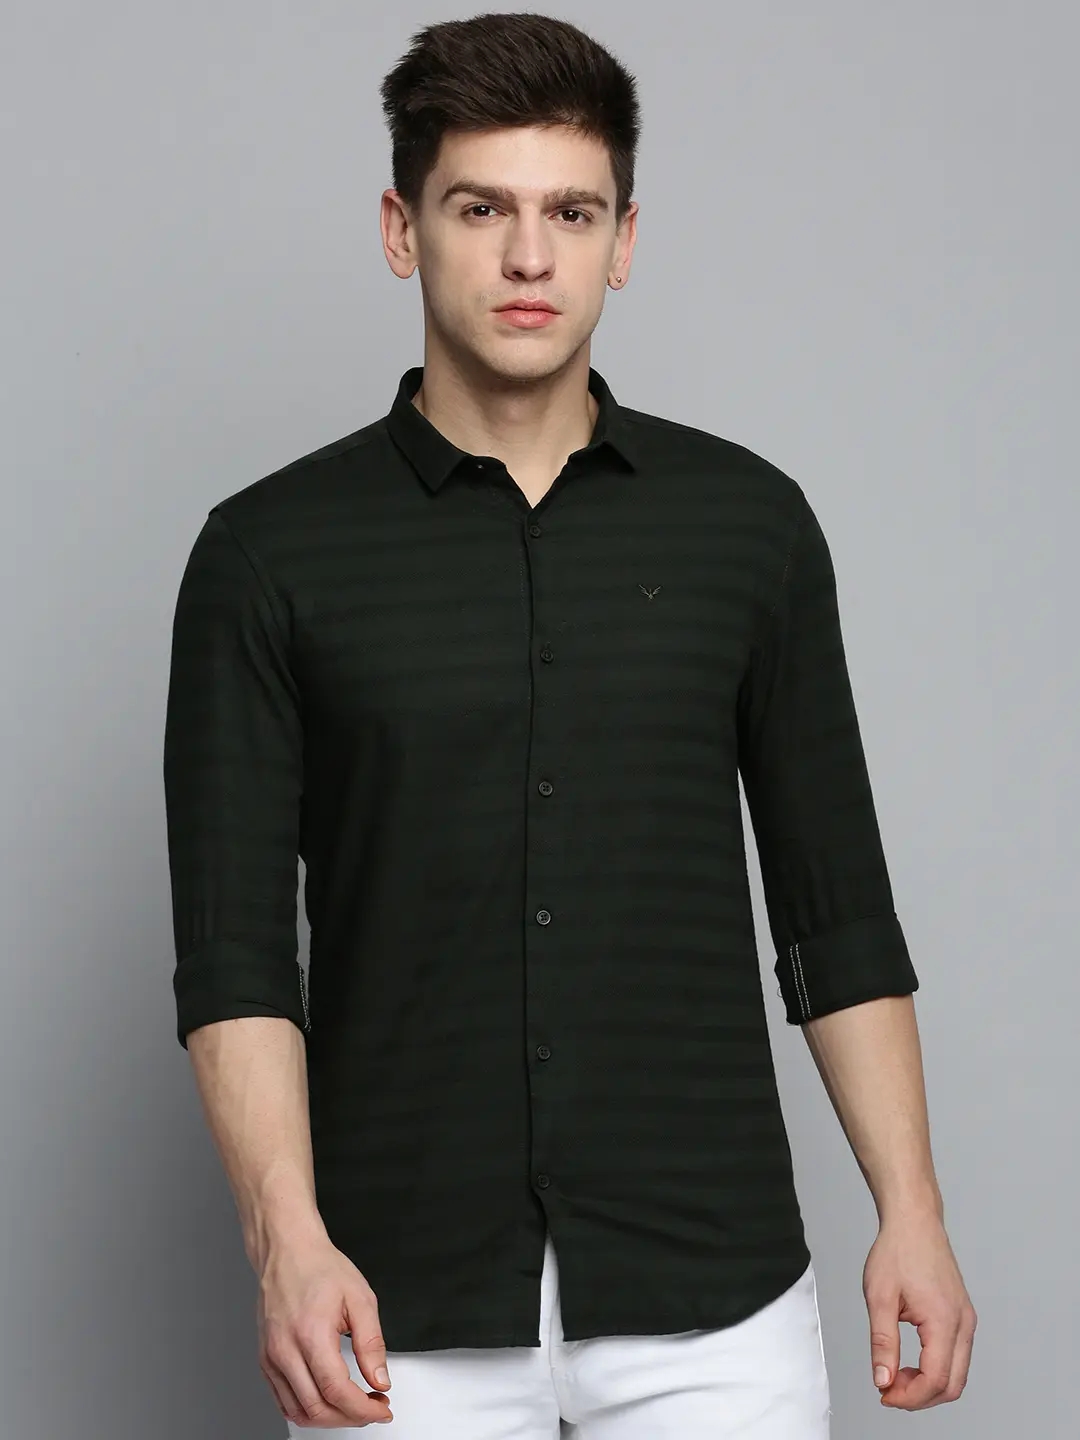 SHOWOFF Men's Spread Collar Olive Self Design Shirt